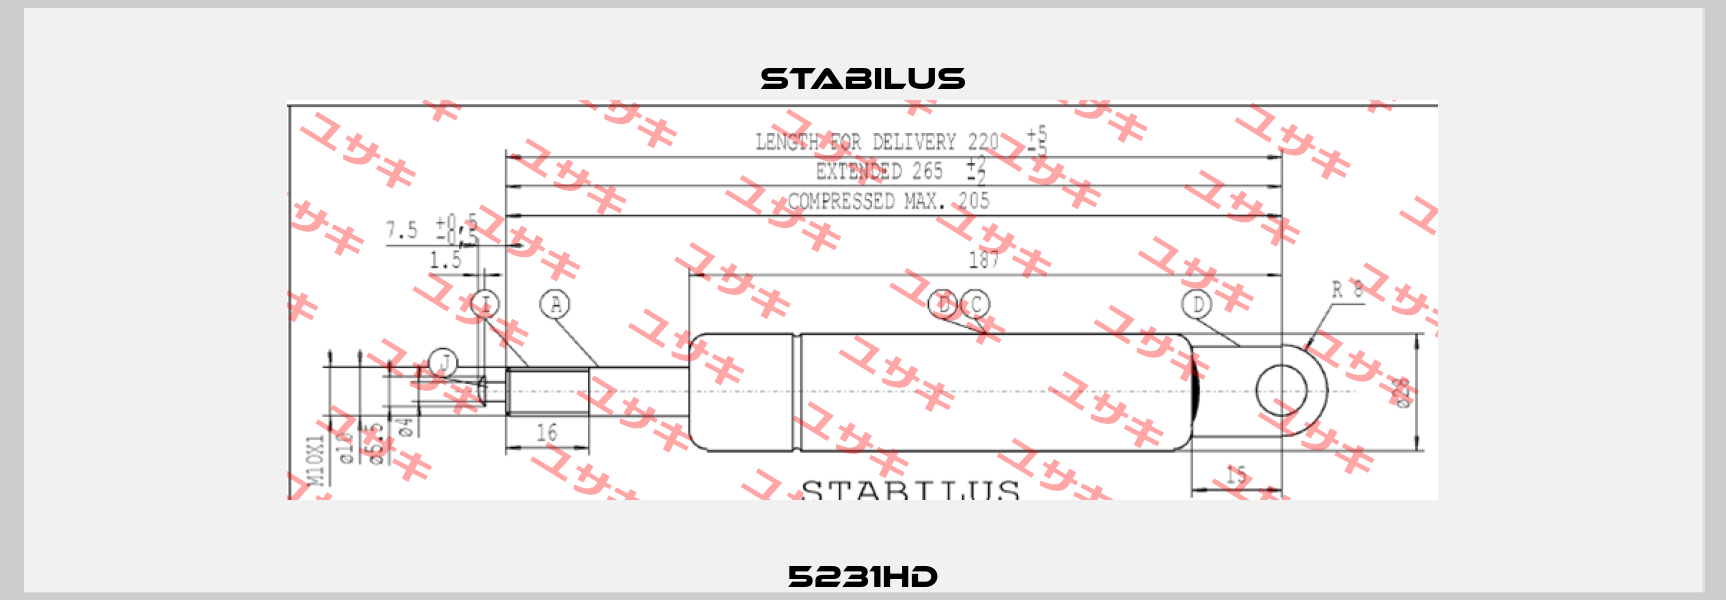 5231HD Stabilus